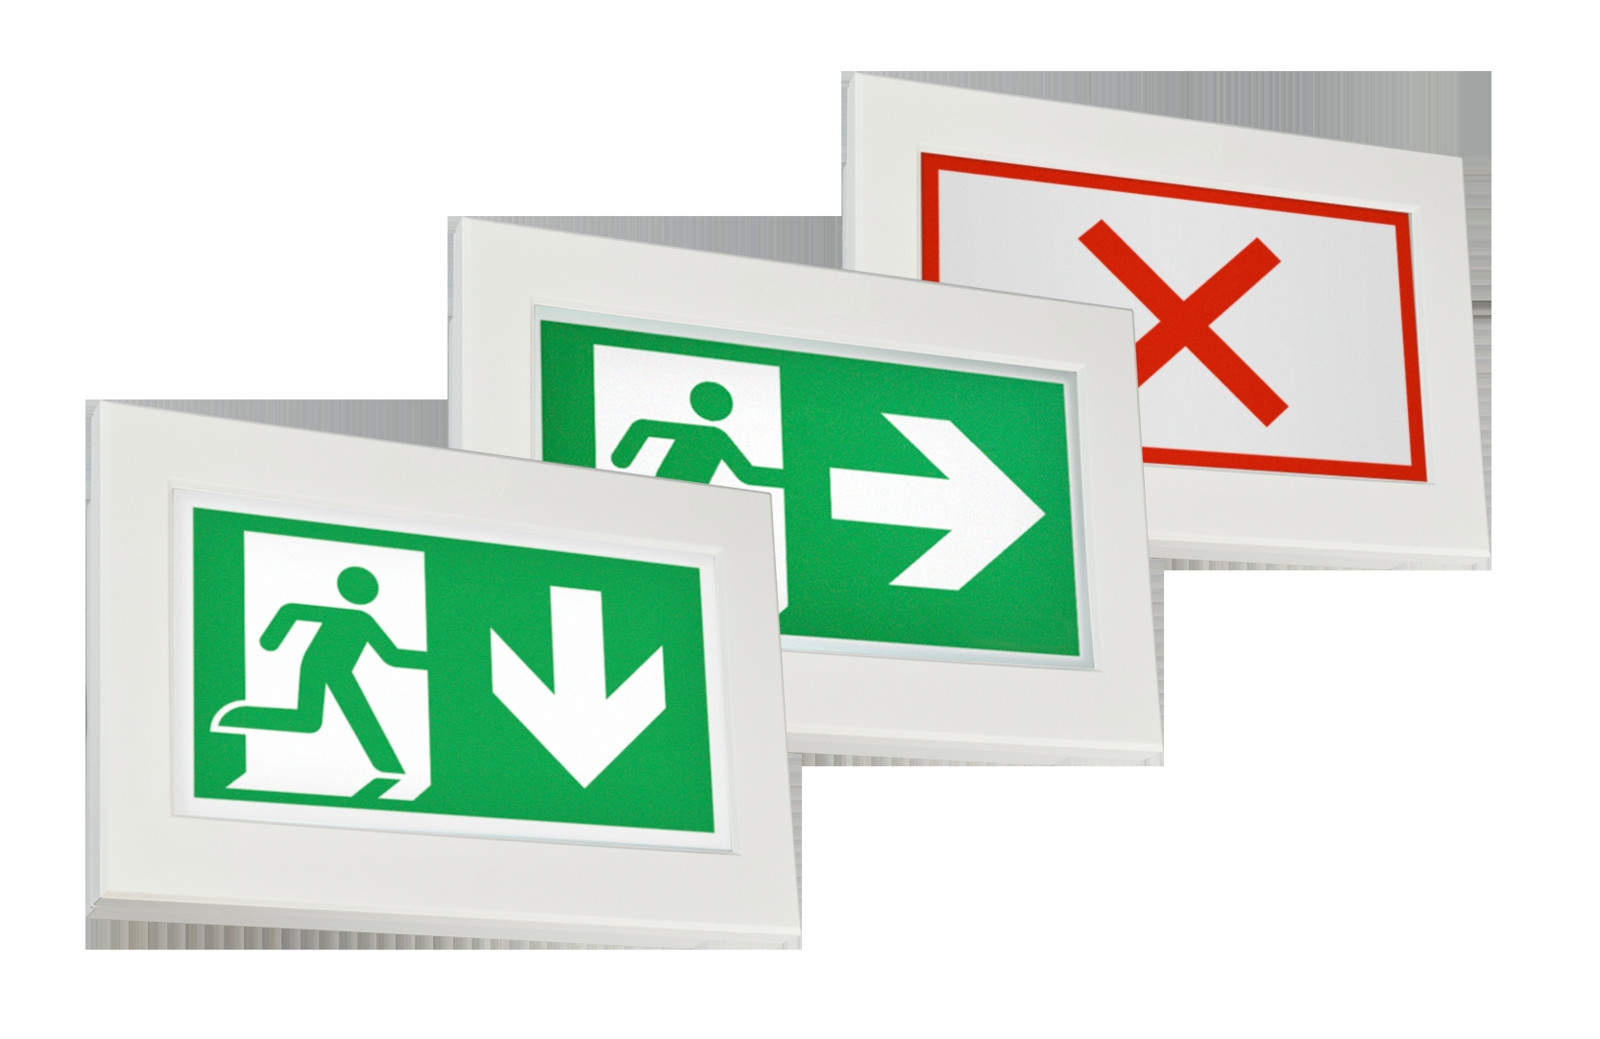 Mit richtungsvariablen Rettungswegkennzeichen können an den Gefahrenort angepasste Fluchtwege ausgeschildert werden.